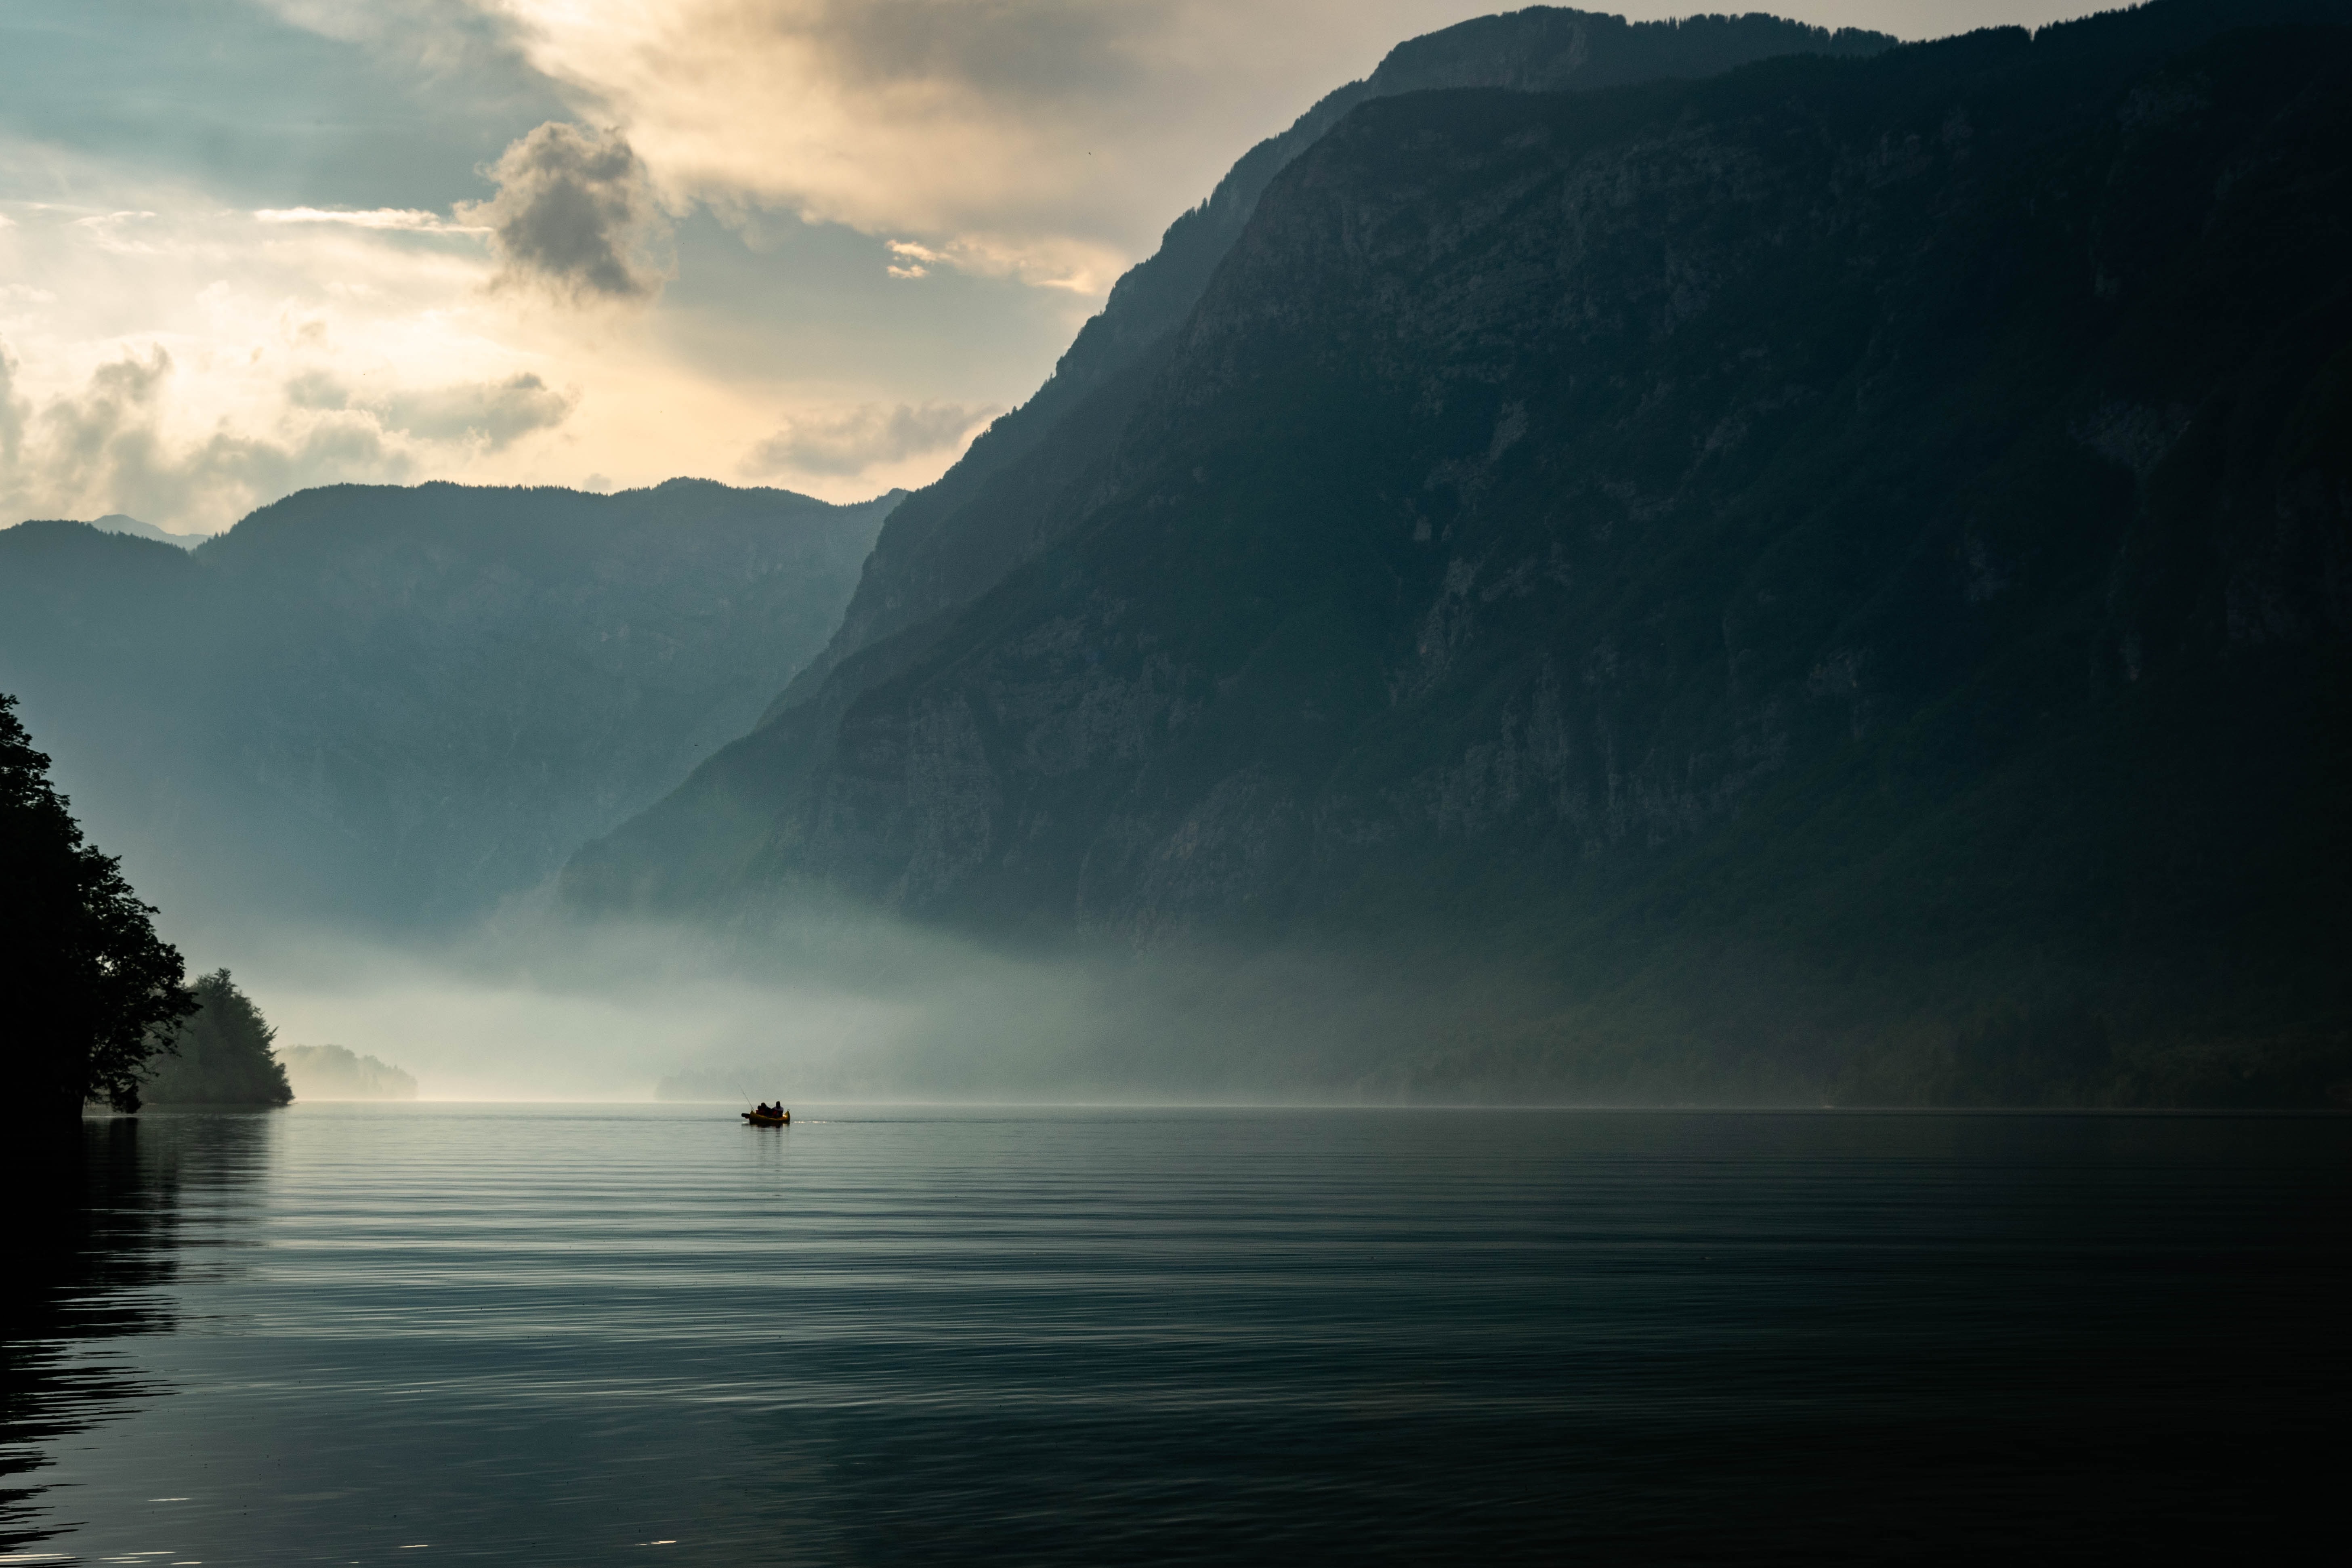 a boat on a misty lake